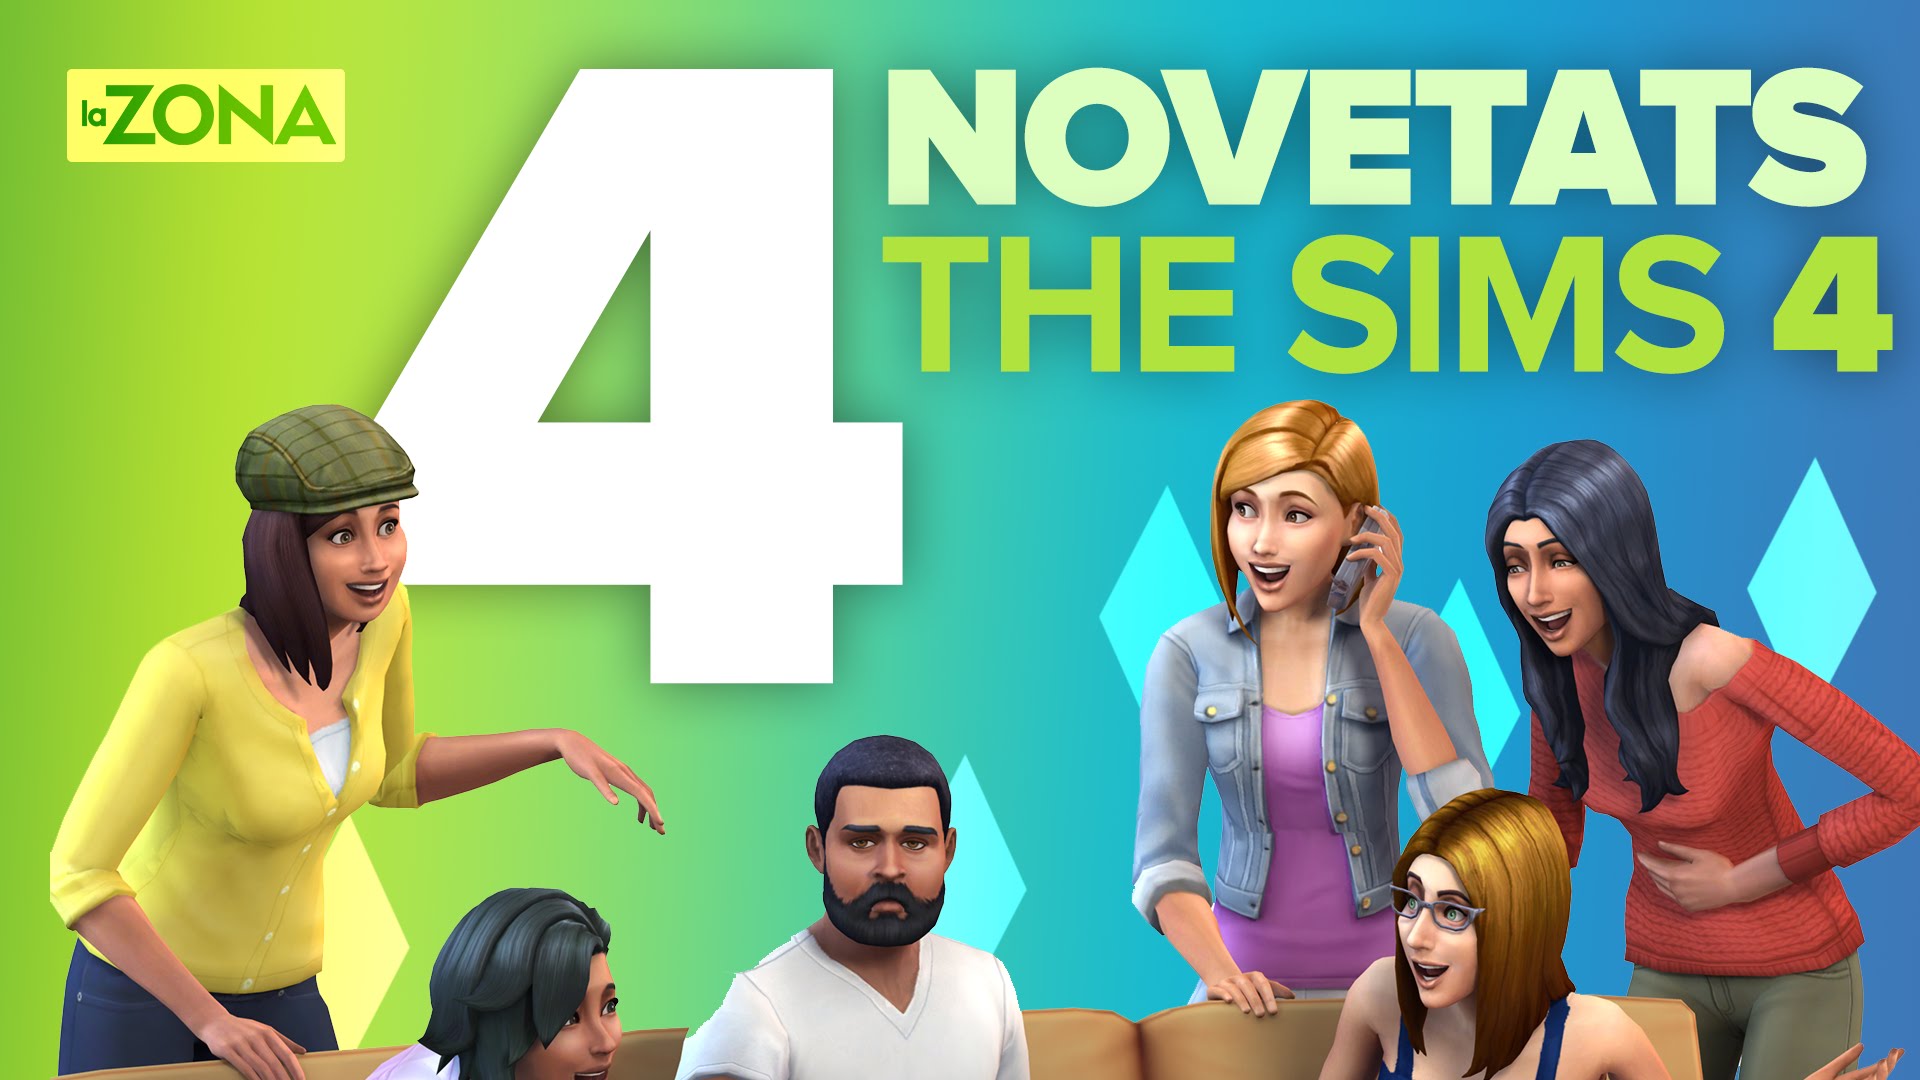 La Zona — 4 novetats estrella de The Sims 4 de TeresaSaborit